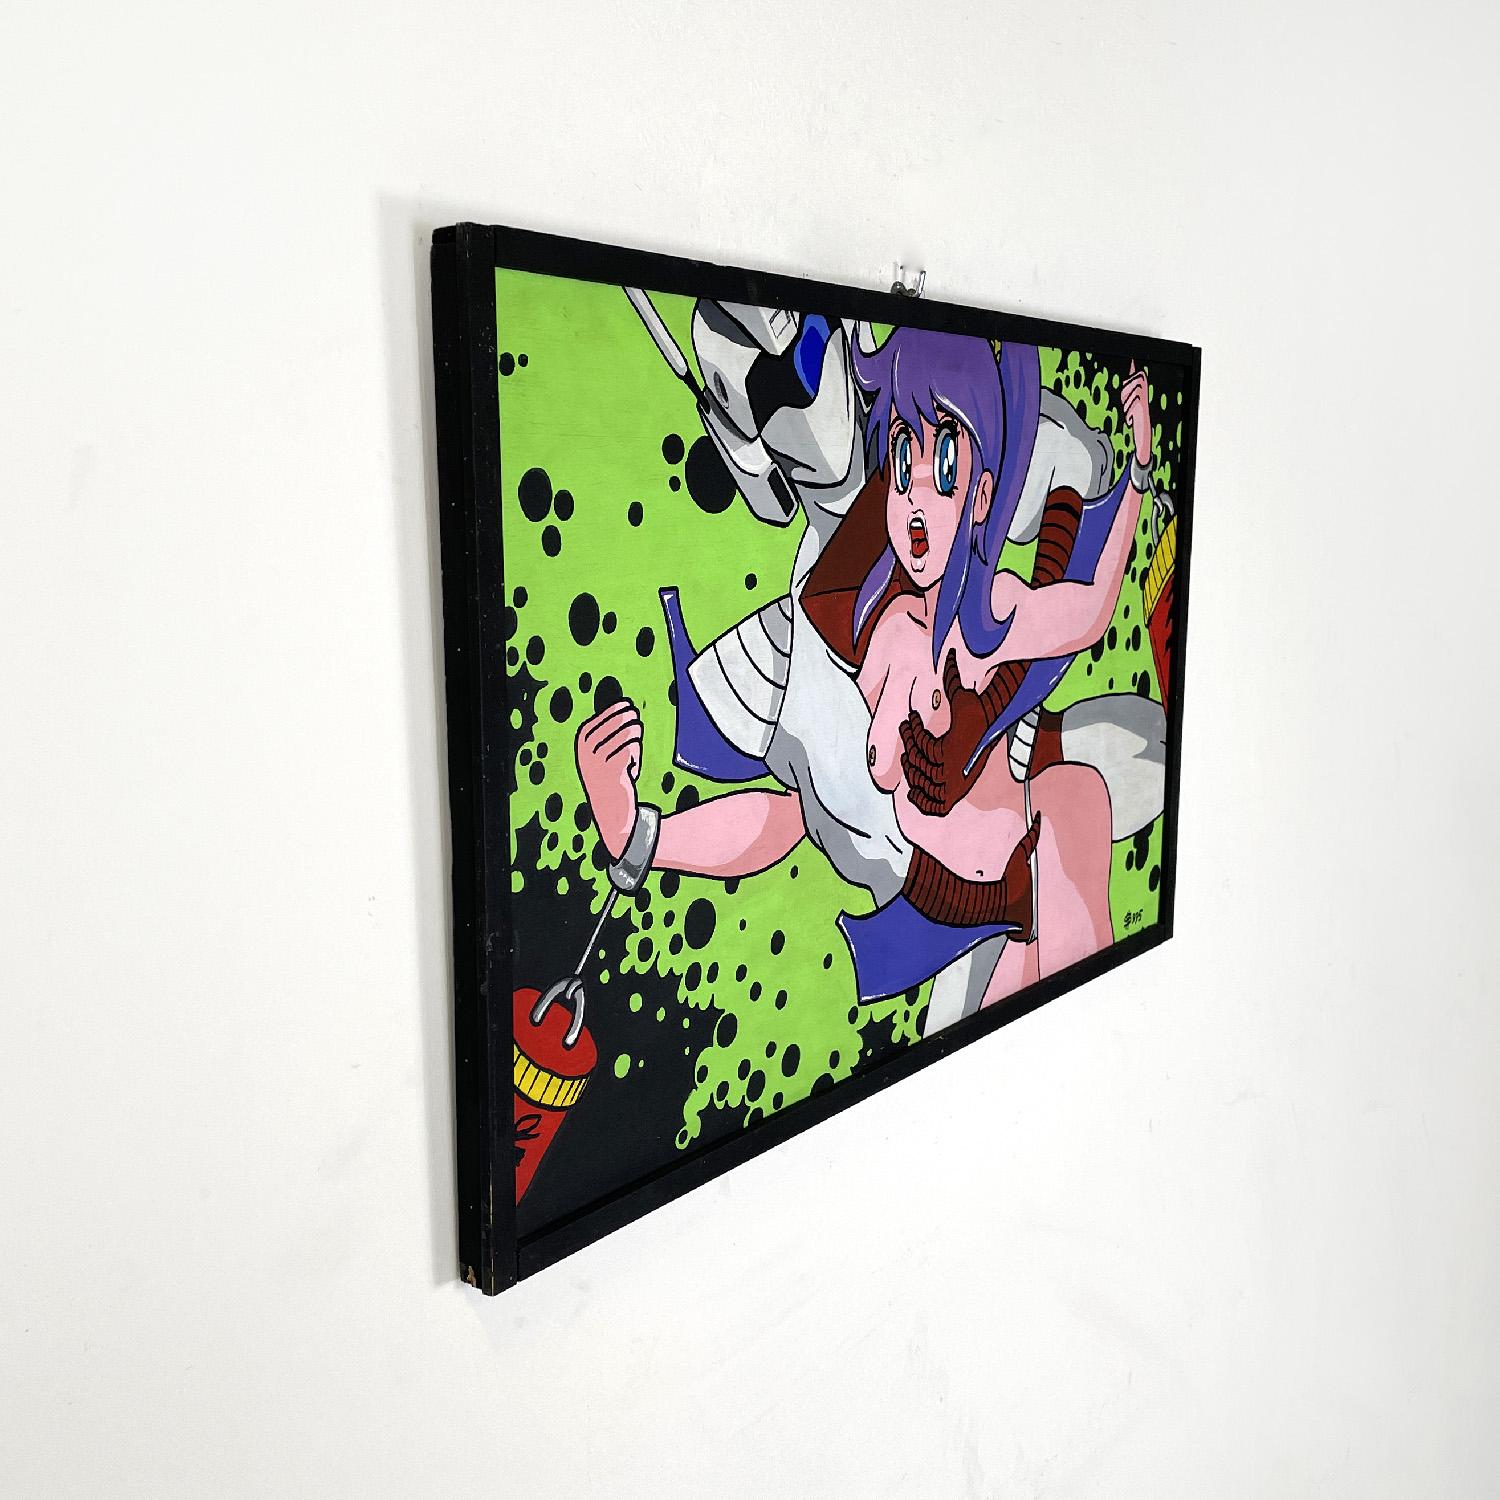 Italienische moderne erotische japanische Manga-Malerei von Gianni S99, 1990er Jahre
Acrylgemälde auf Karton mit einem erotischen Thema, das ikonische Figuren aus der japanischen Manga-Popkultur darstellt. Die Komposition zeichnet sich durch